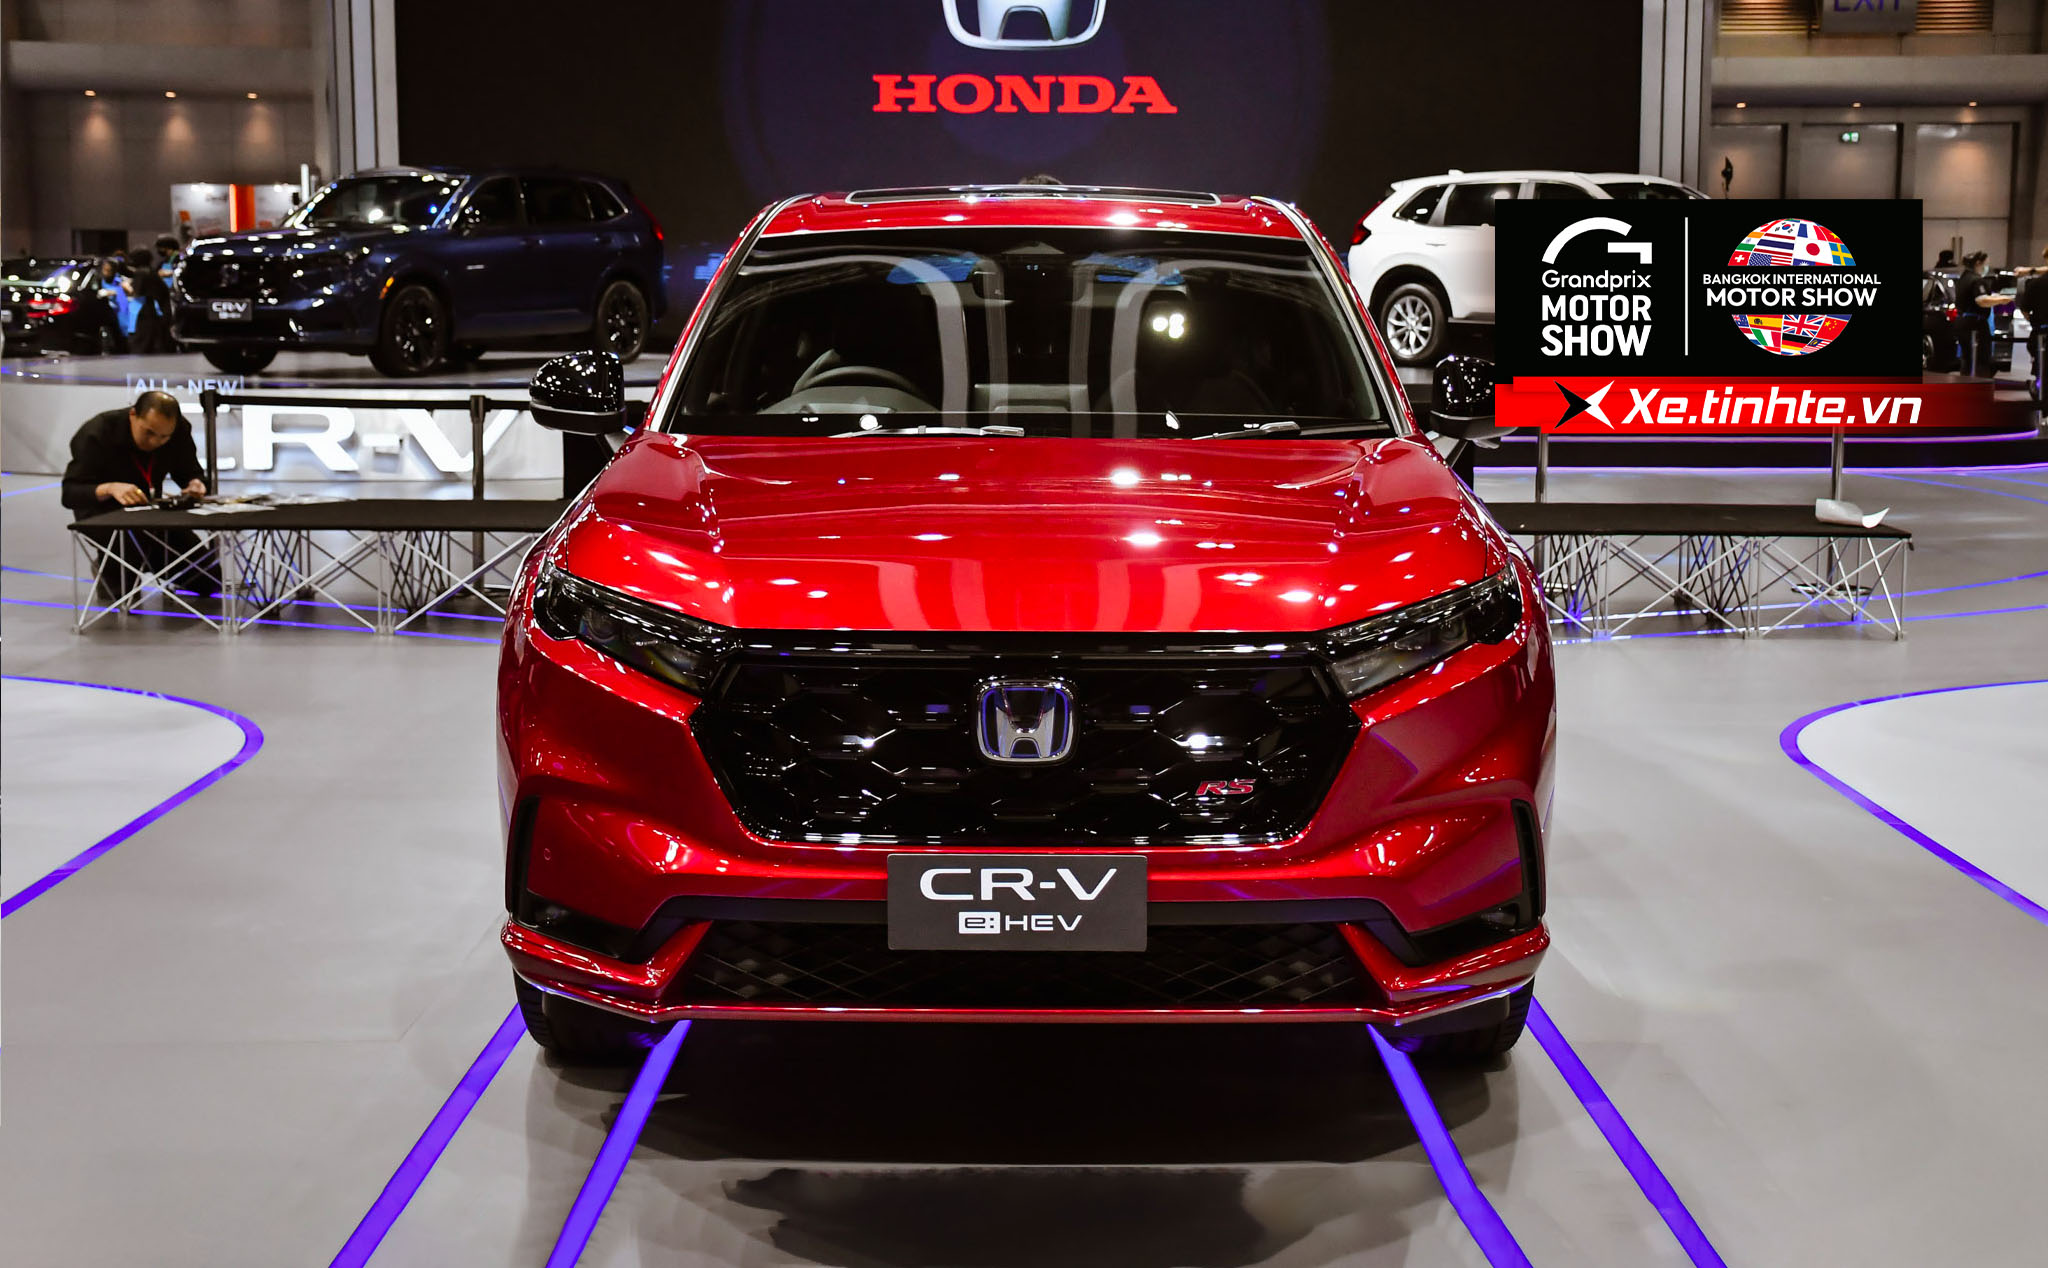 BIMS 2023: "Trên tay" Honda CR-V 2023 - cứng cáp, hiện đại hơn, tuỳ chọn động cơ tăng áp hoặc hybrid